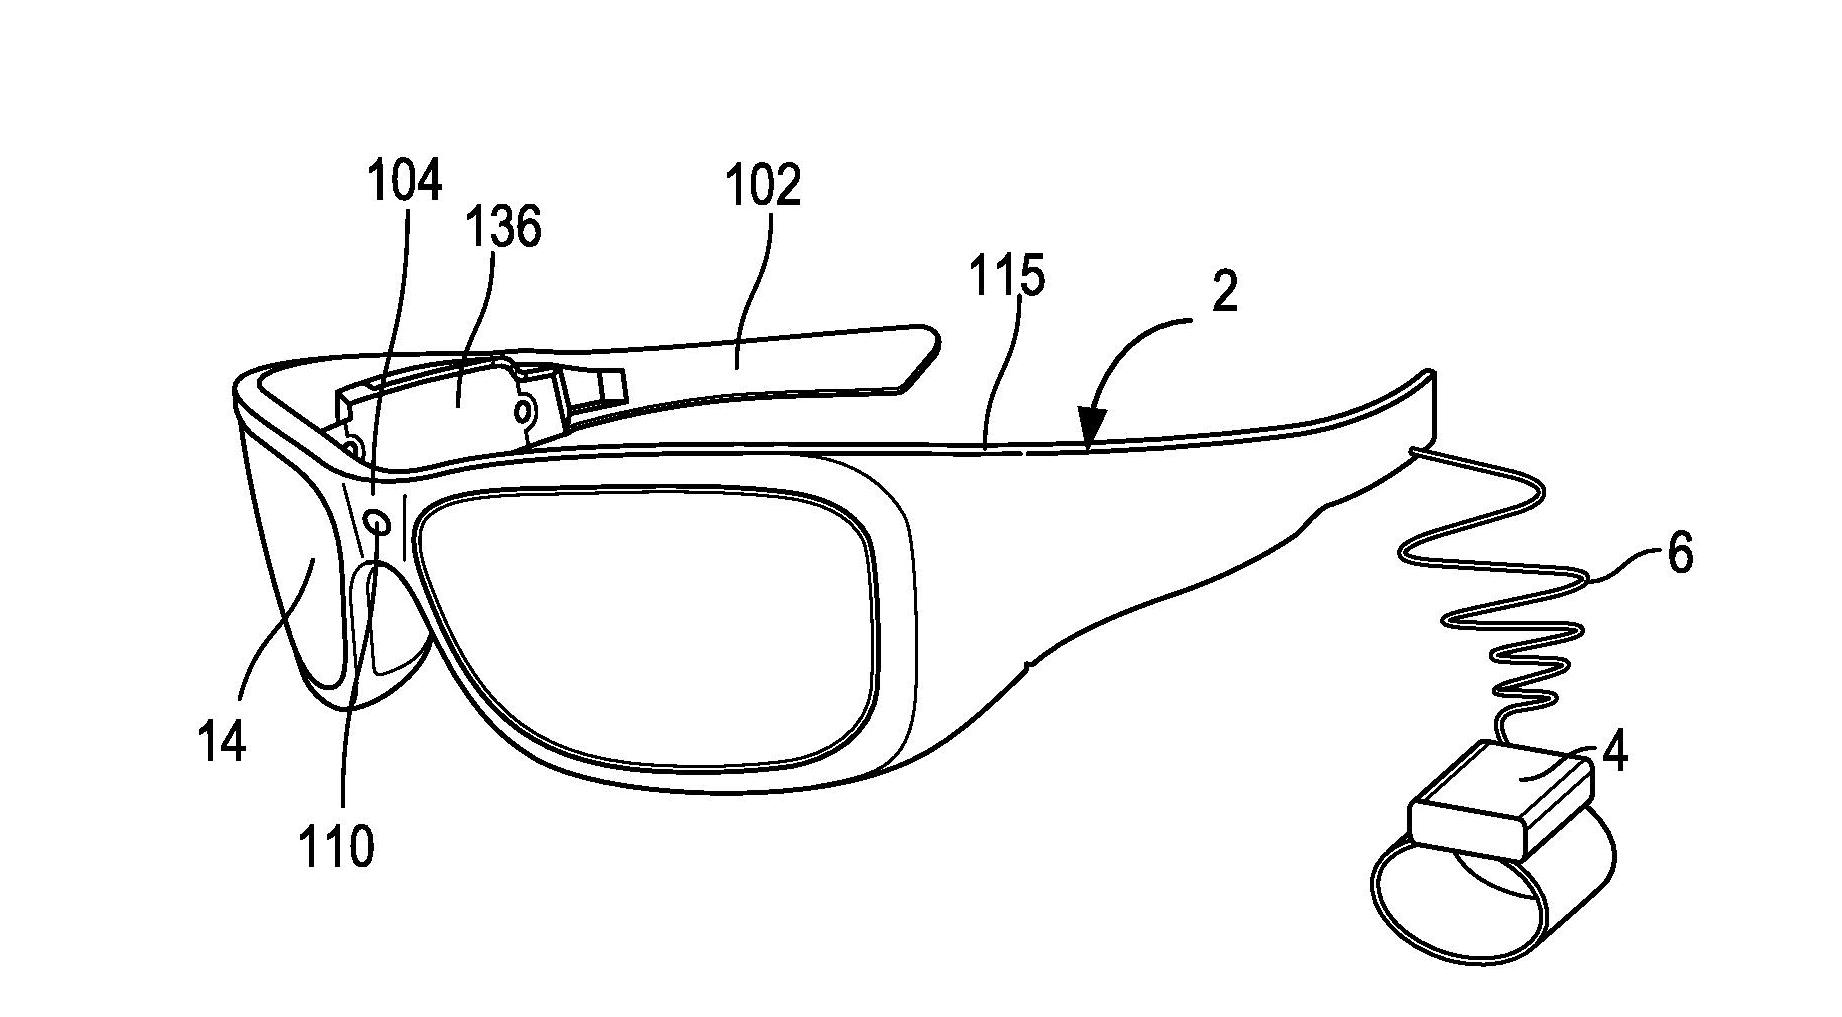 Patenterer smarte briller som kjenner igjen objekter